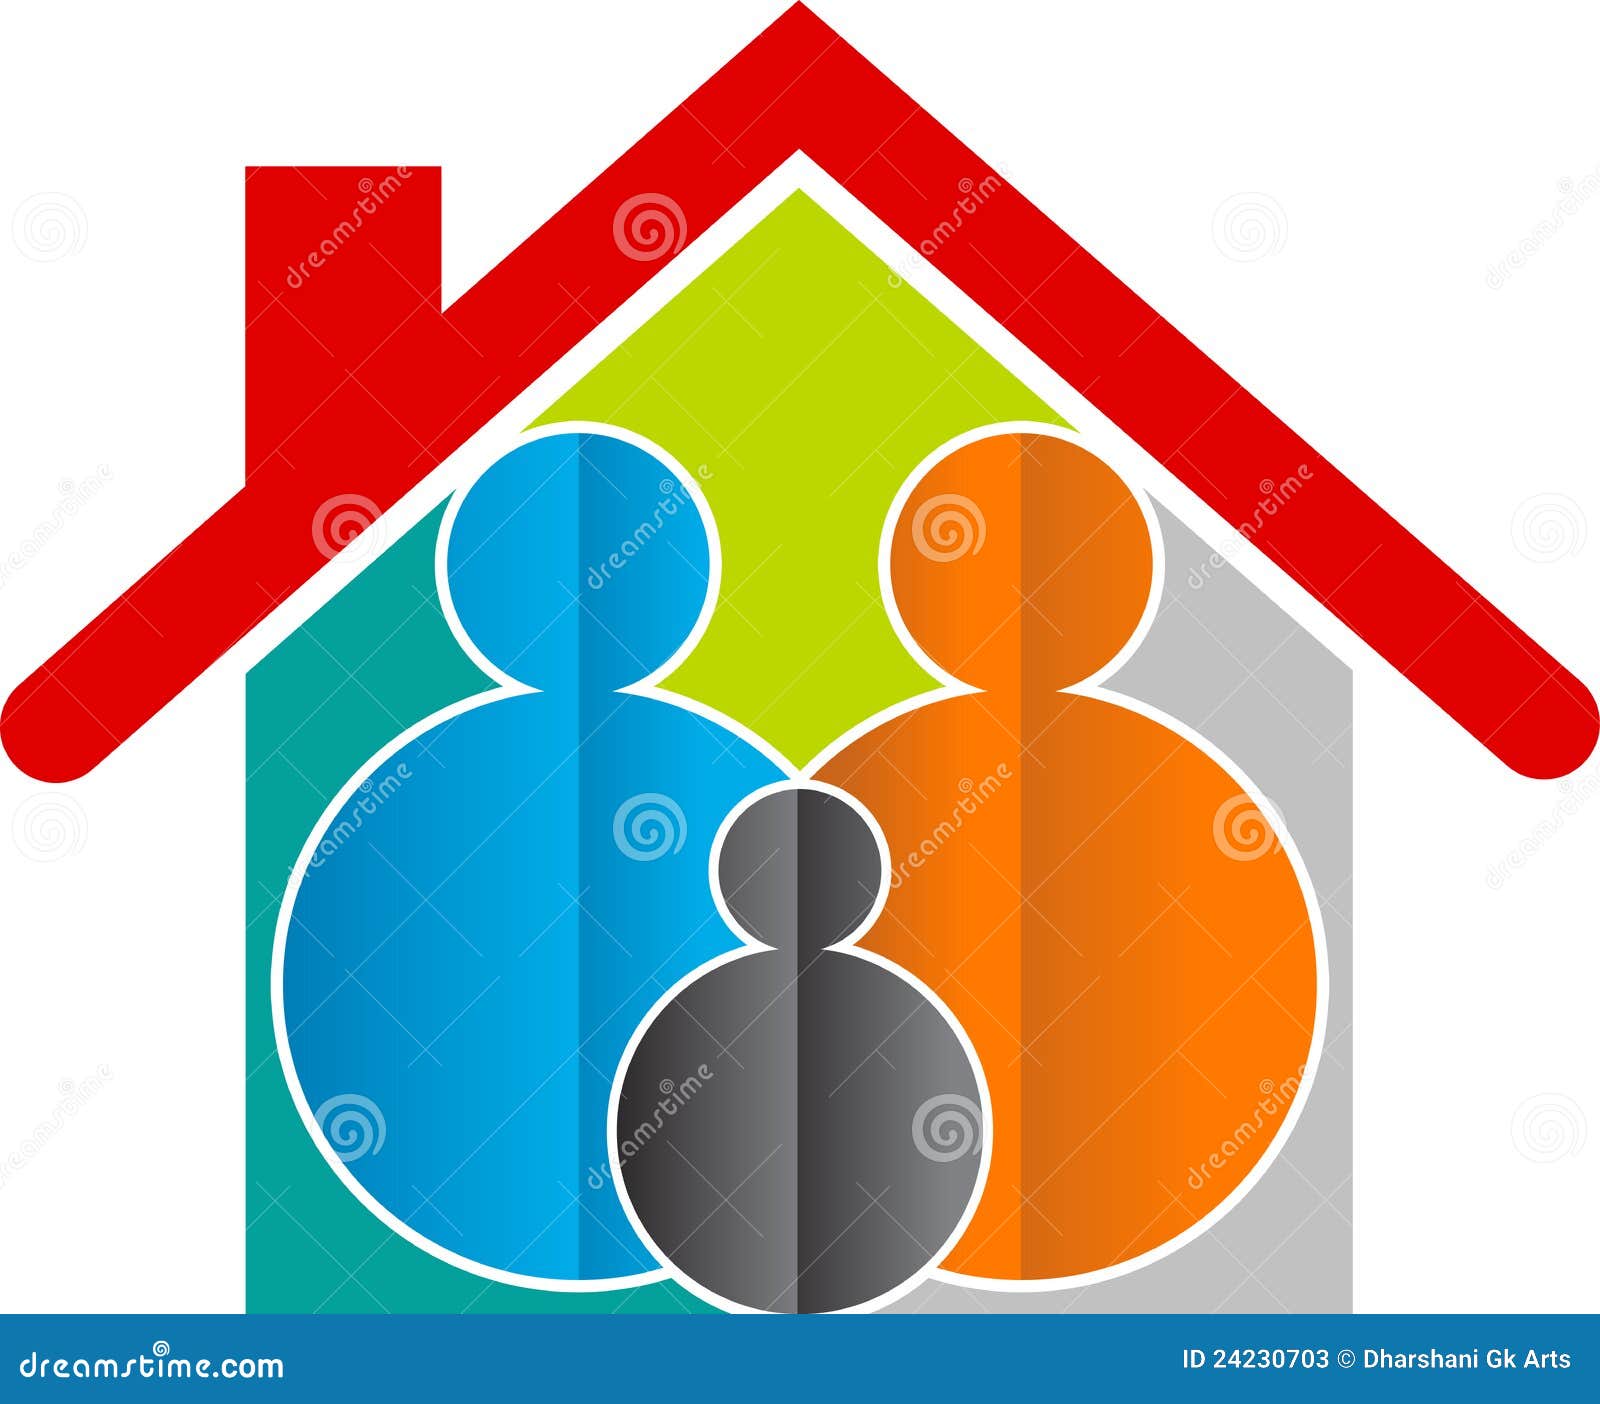 Family home logo stock vector. Illustration of illustration - 24230703